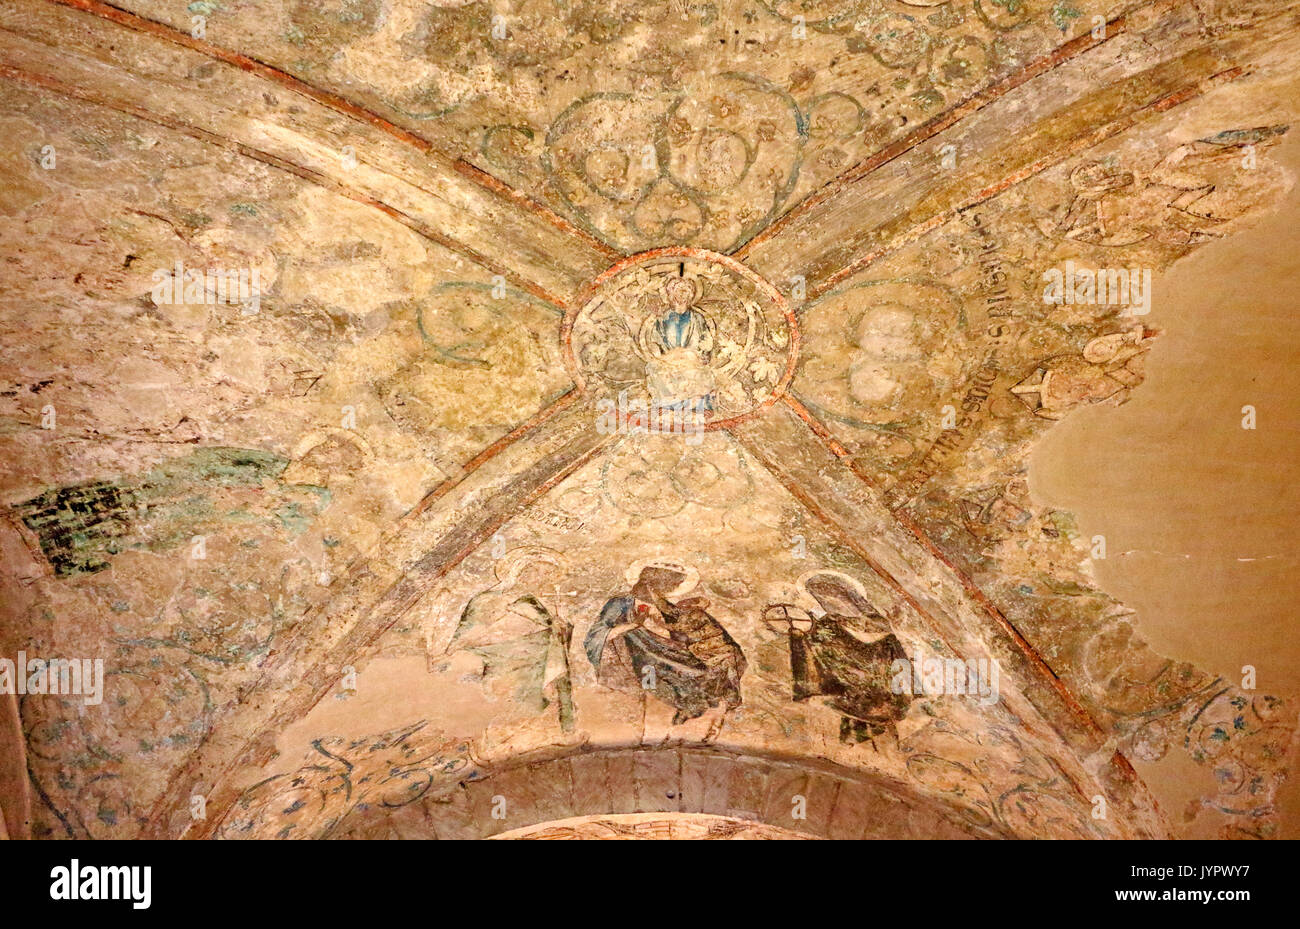 Une vue de la peinture médiévale sur le plafond de la trésorerie dans la cathédrale anglicane de la ville de Norwich, Norfolk, Angleterre, Royaume-Uni. Banque D'Images